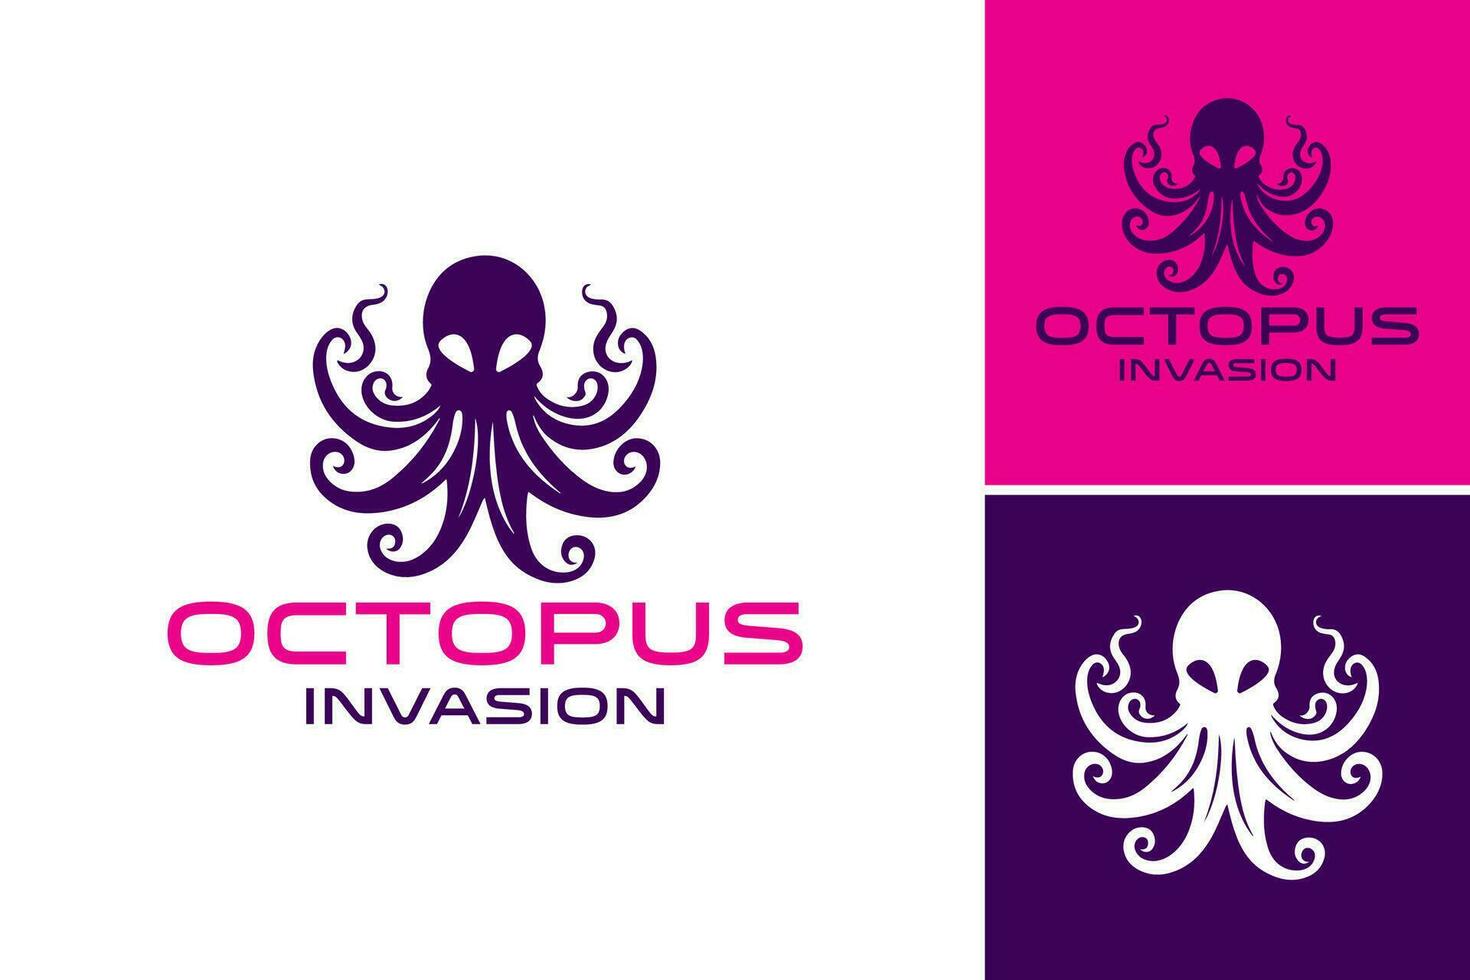 pulpo invasión logo diseño, adecuado para utilizar en ilustraciones, carteles, o sitio web diseños con temas de aventura, submarino mundo, o fantasía. vector